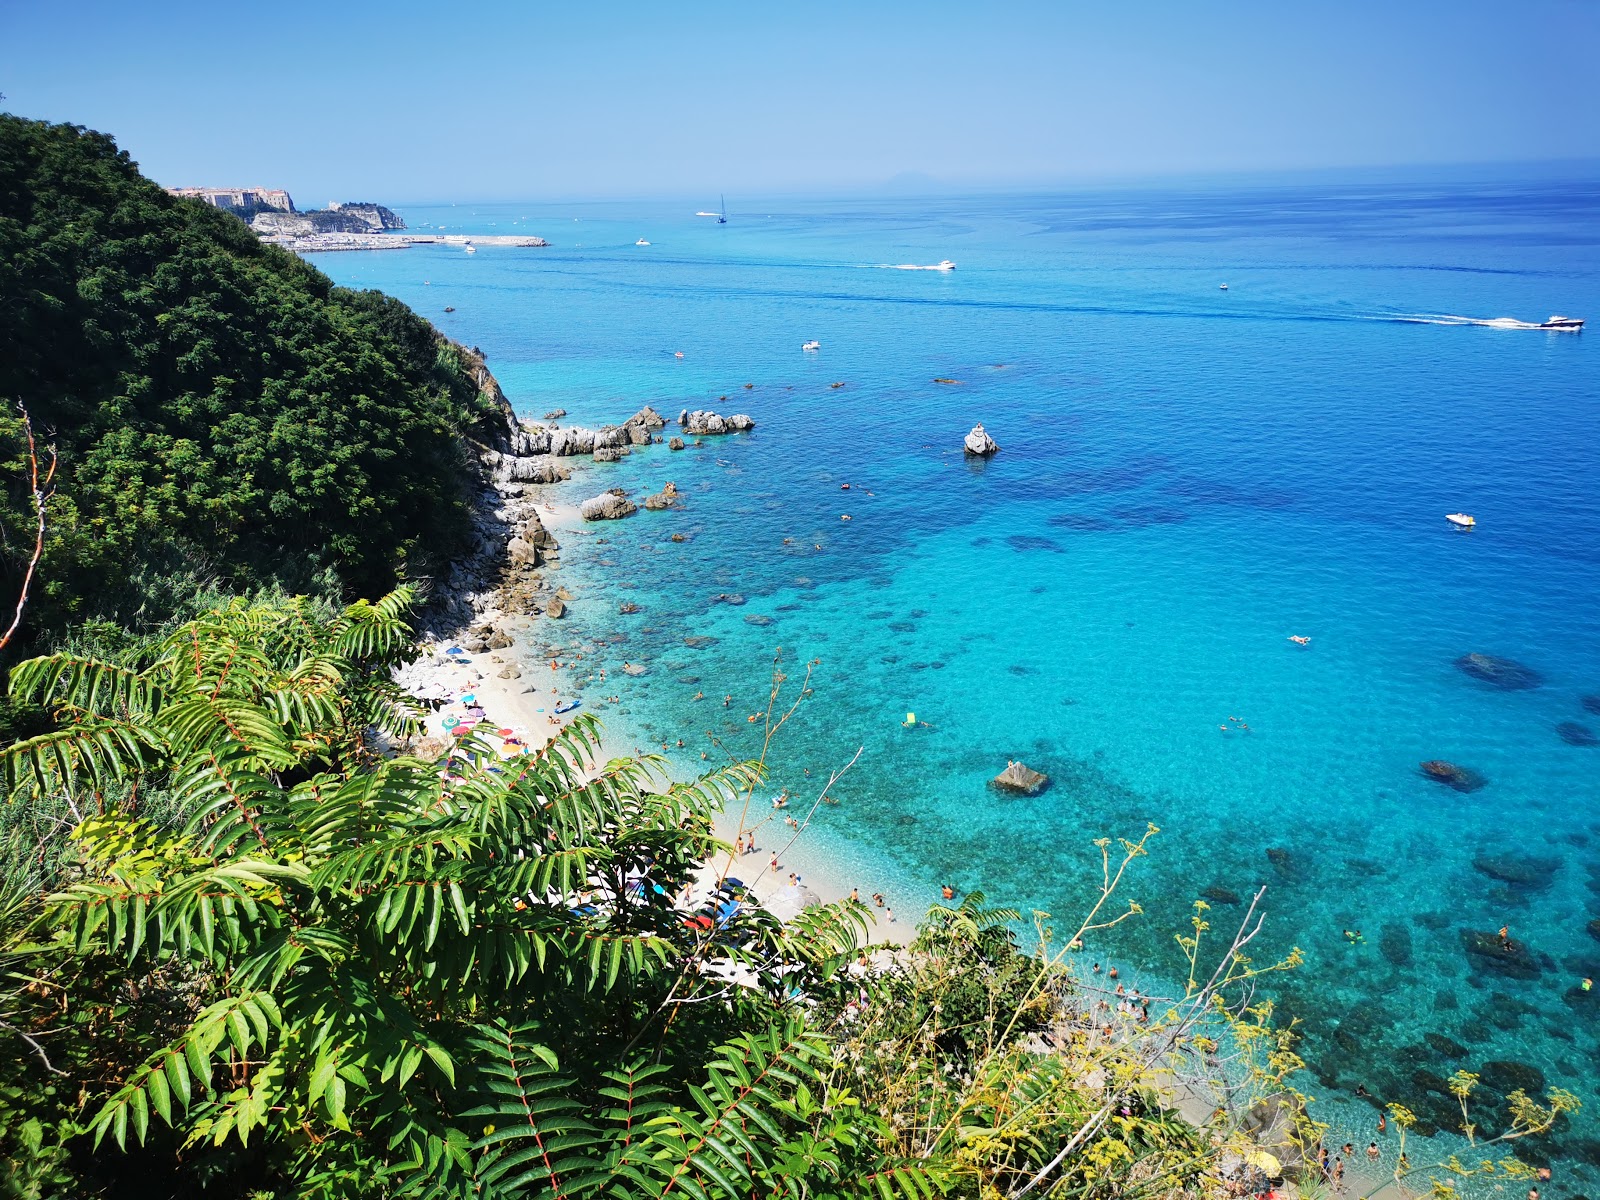 Photo of Michelino Beach and its beautiful scenery